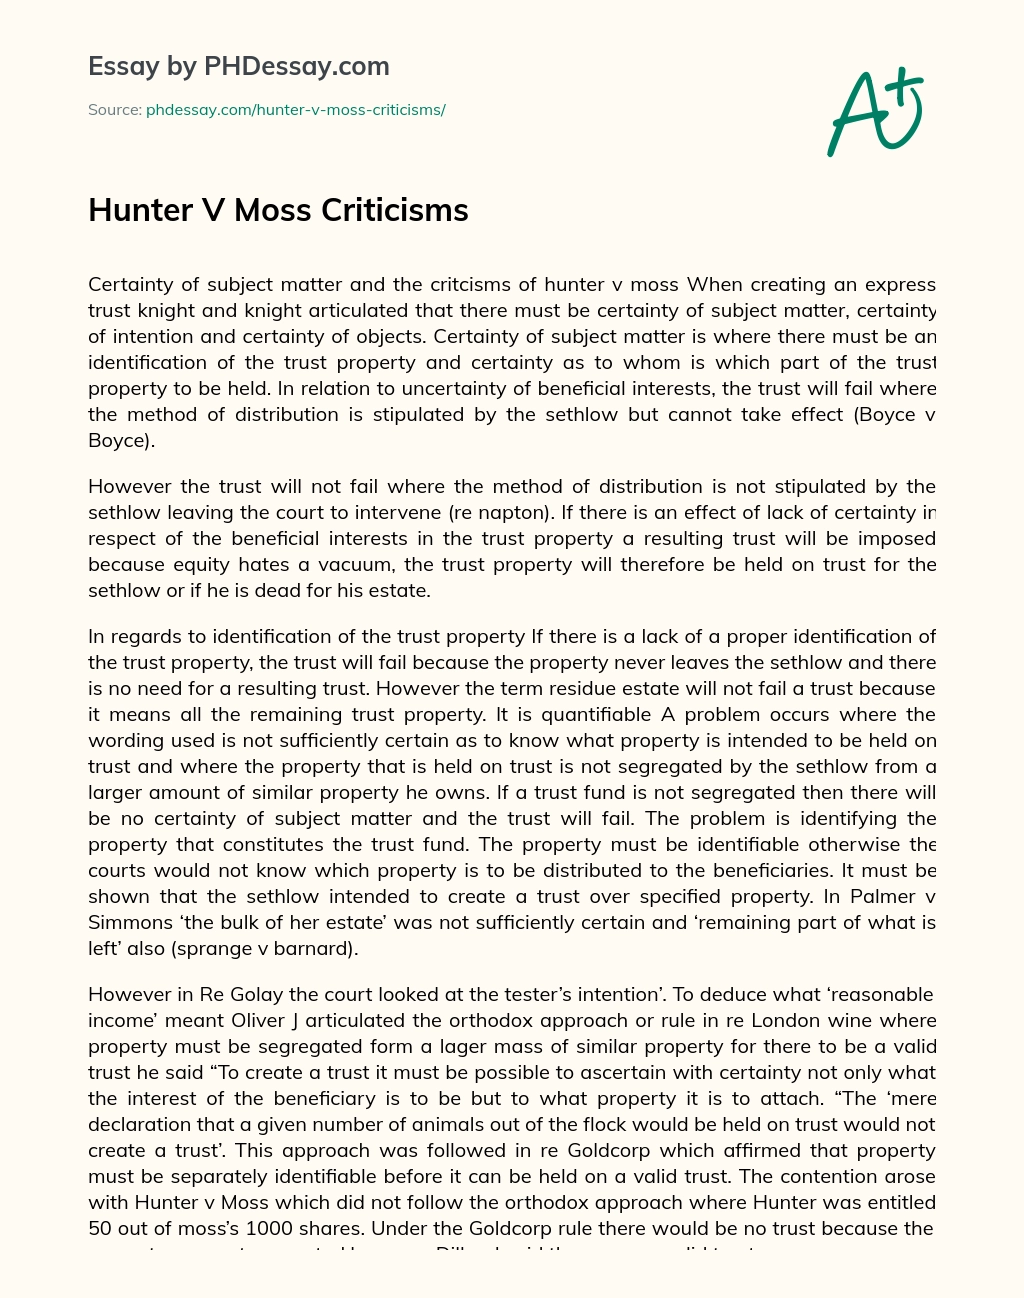 Hunter V Moss Criticisms essay